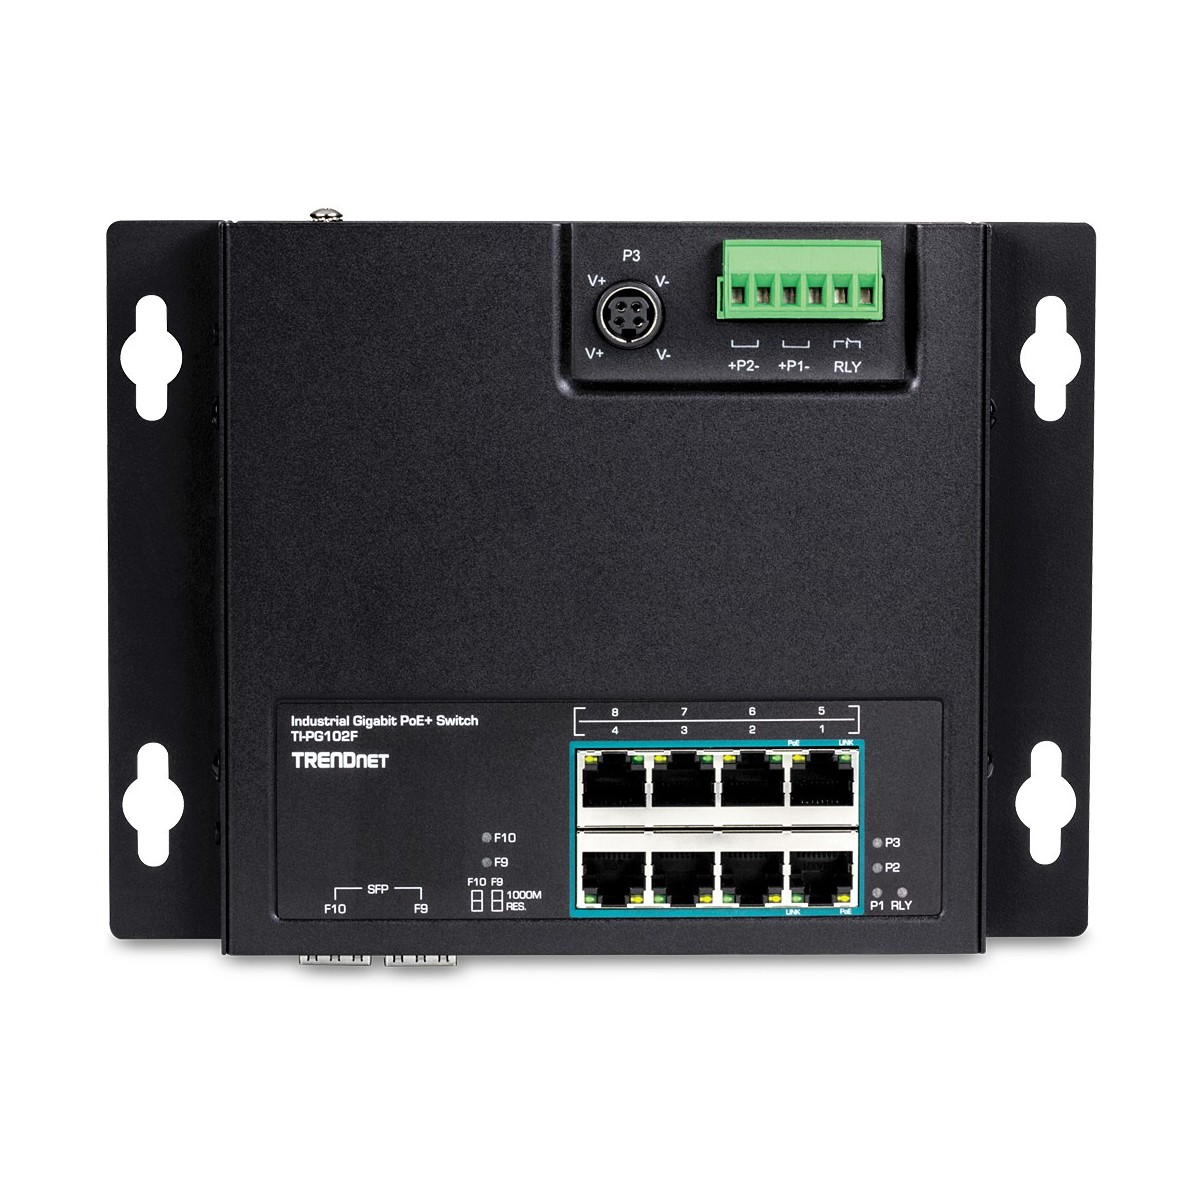 TRENDnet TI-PG102F - Gigabit Ethernet (10/100/1000) - Full duplex - Power over Ethernet (PoE) - Wall mountable